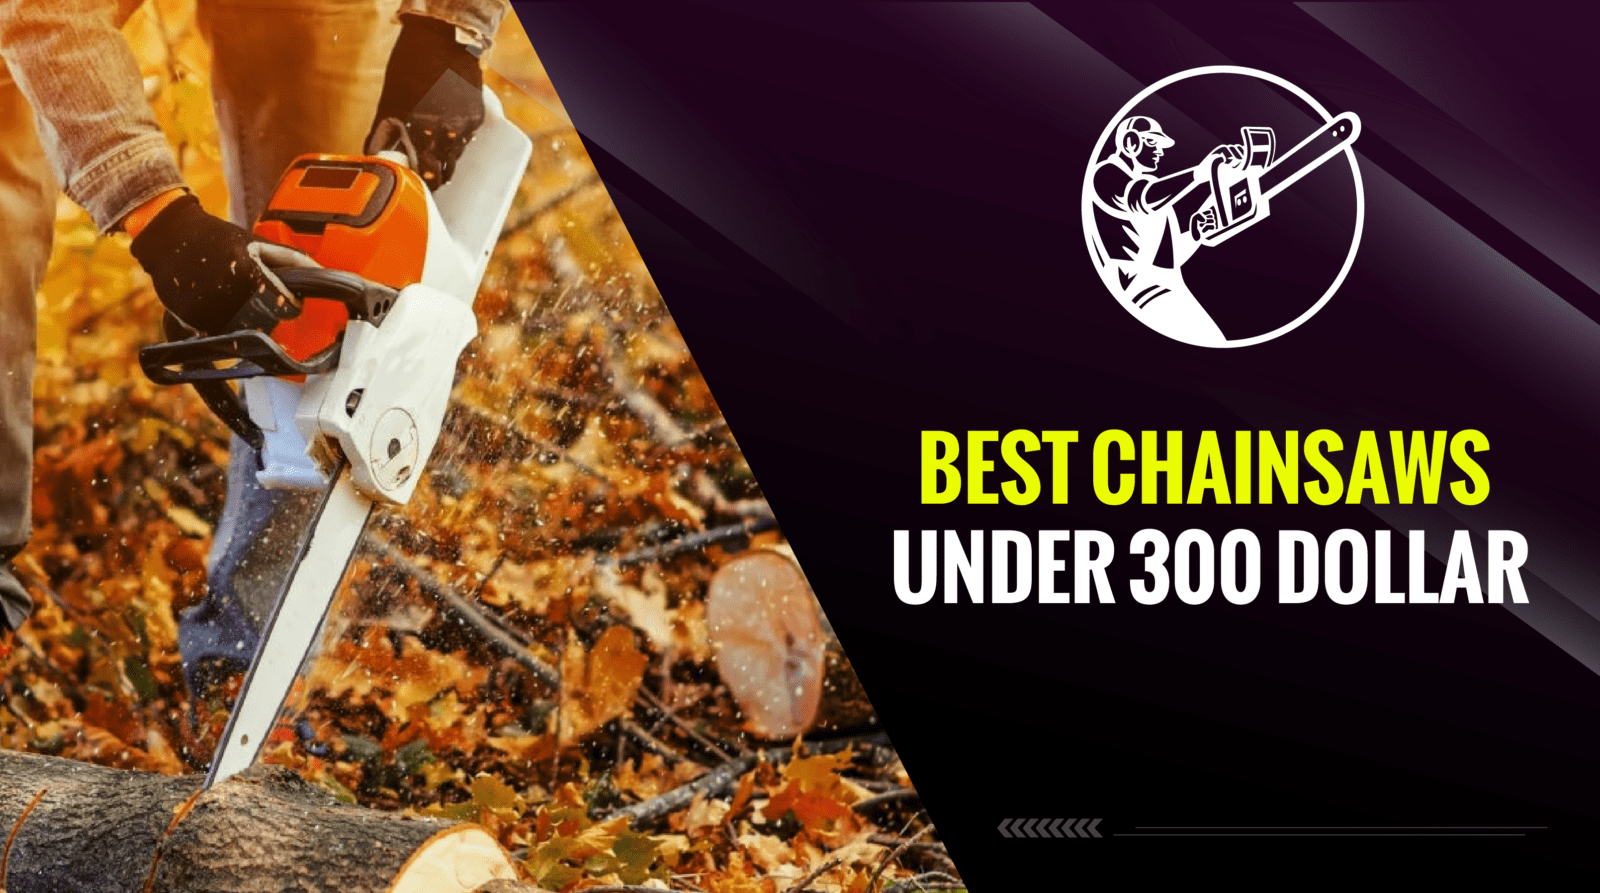 Best Chainsaws Under 300 Dollar – Our Top 6 Picks!